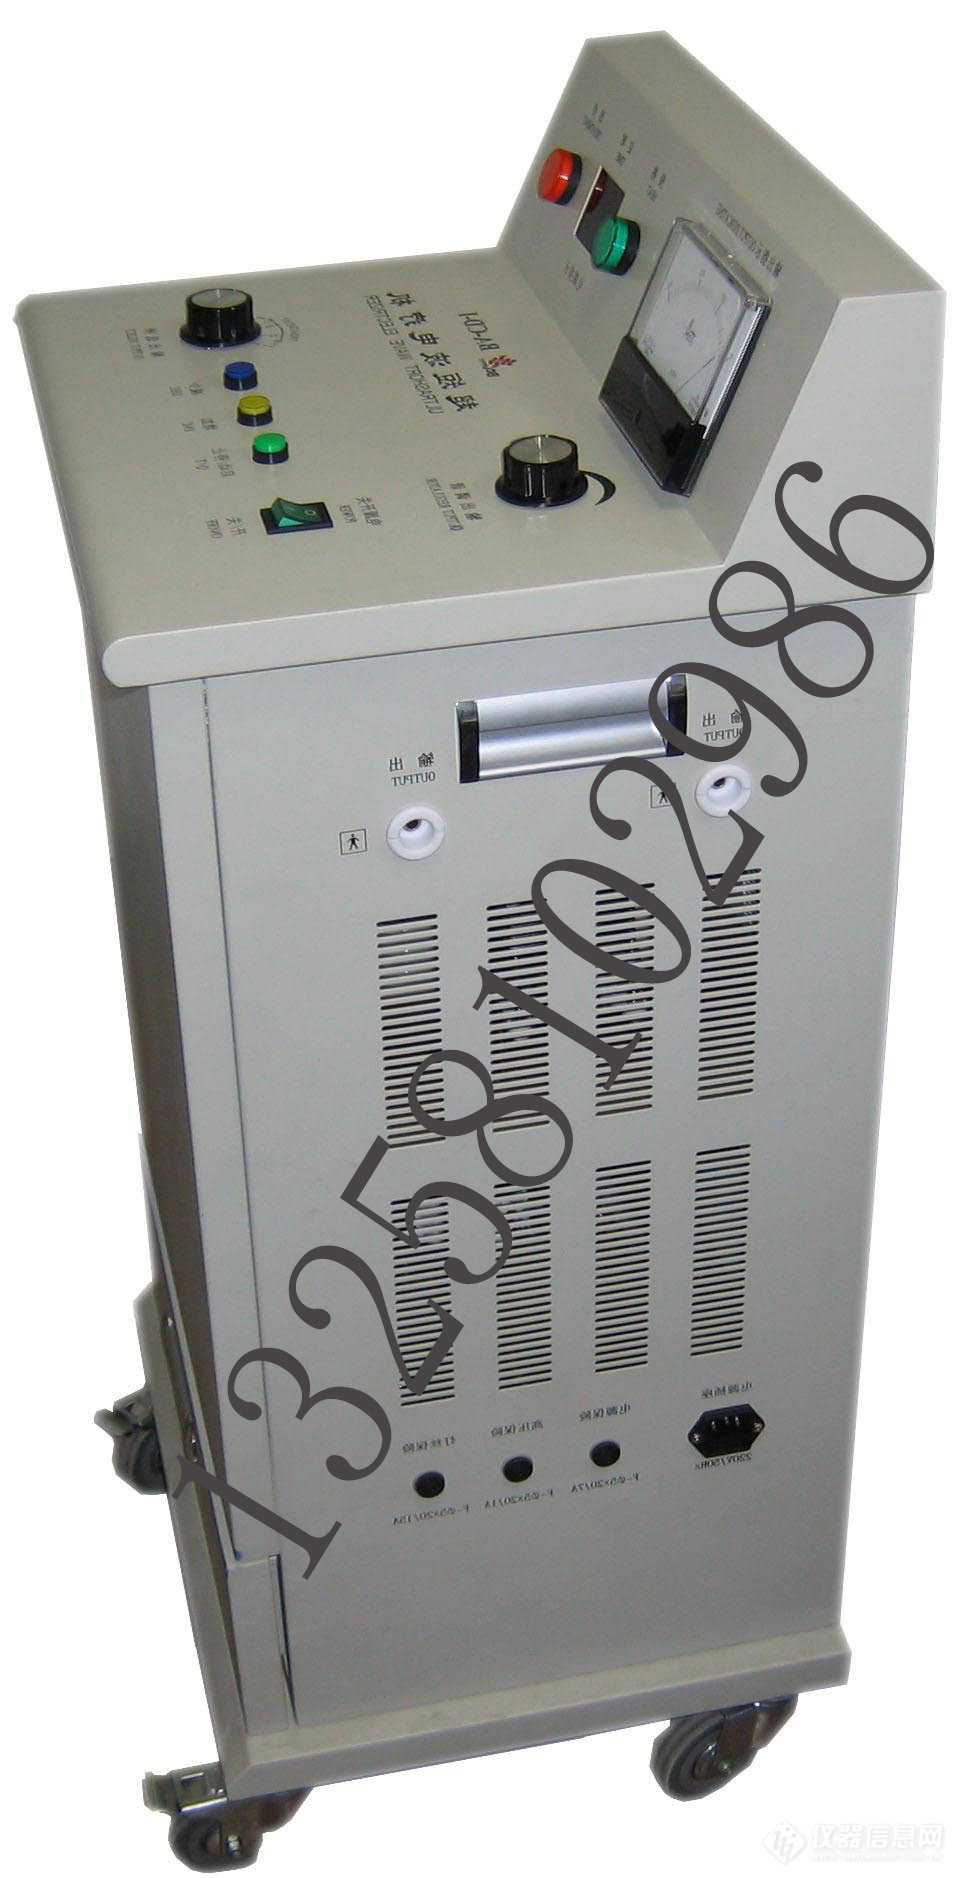 BA-CD-I型超短波电疗机.jpg